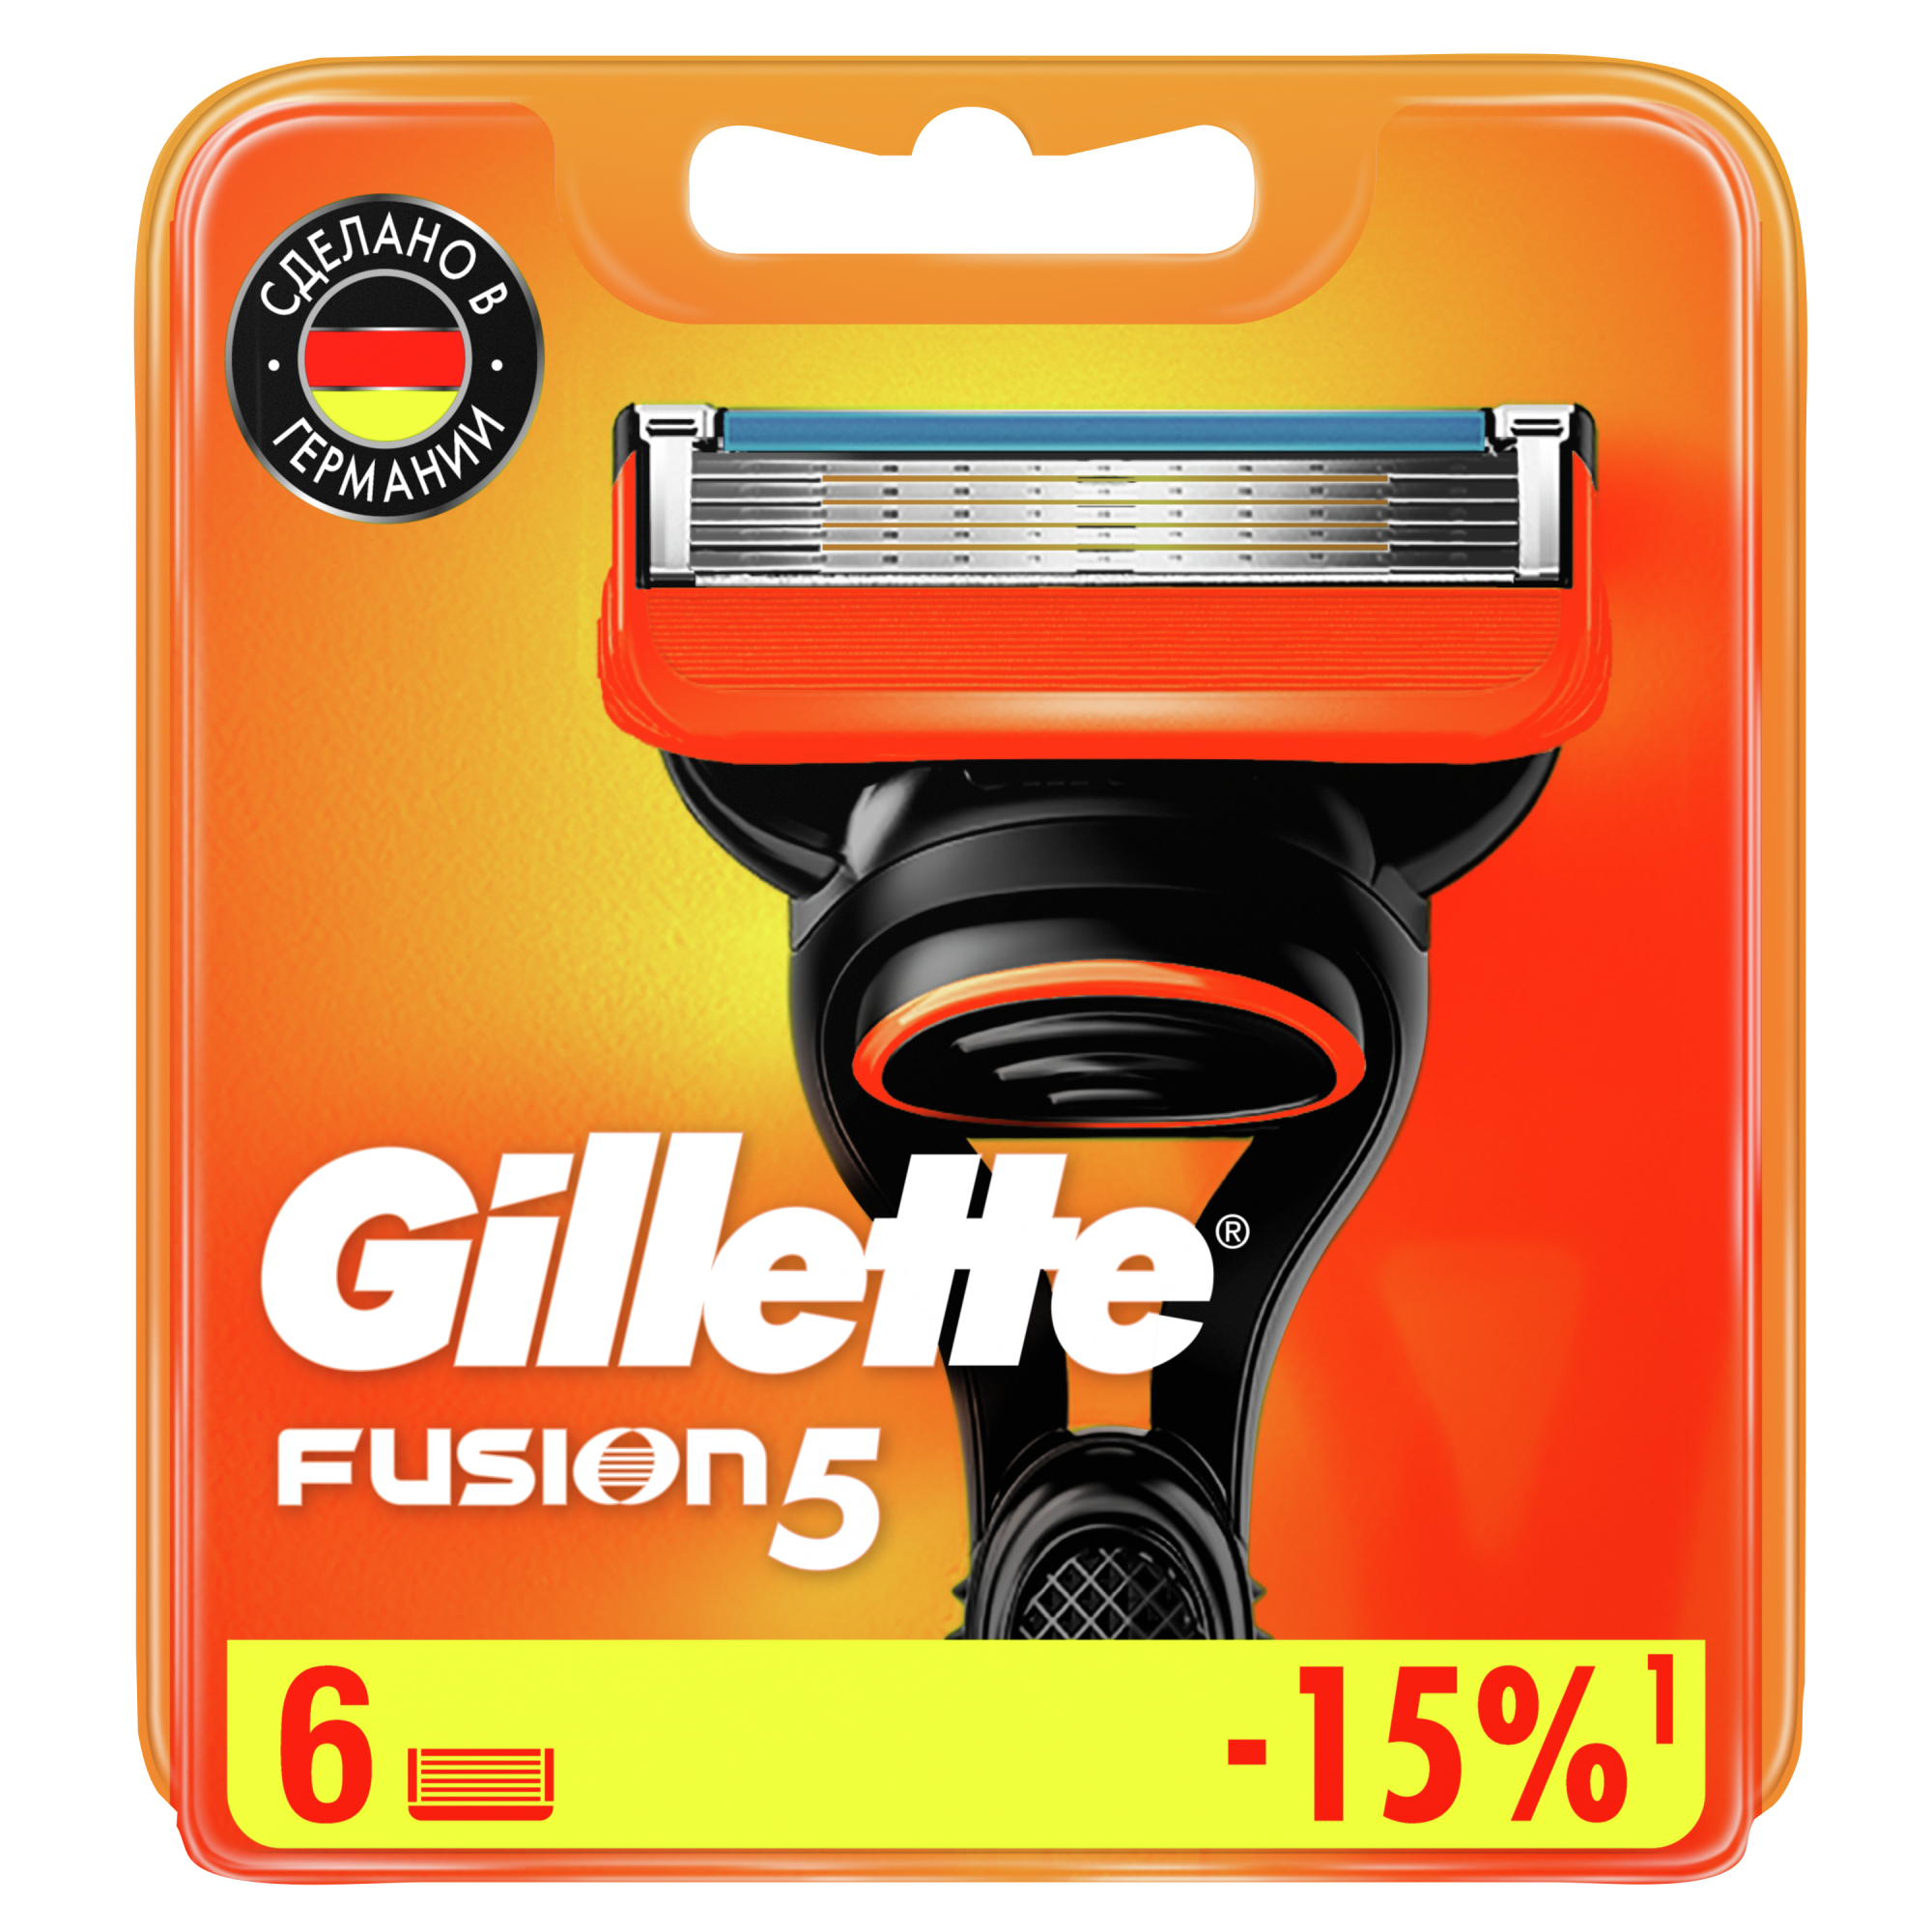 Сменные кассеты для мужской бритвы Gillette Fusion5 Power, с 5 лезвиями, c точным триммером для труднодоступных мест, для гладкого бритья надолго, 6 шт сменные кассеты для женской бритвы venus extra smooth 5 лезвий 2 шт невероятная гладкость надолго